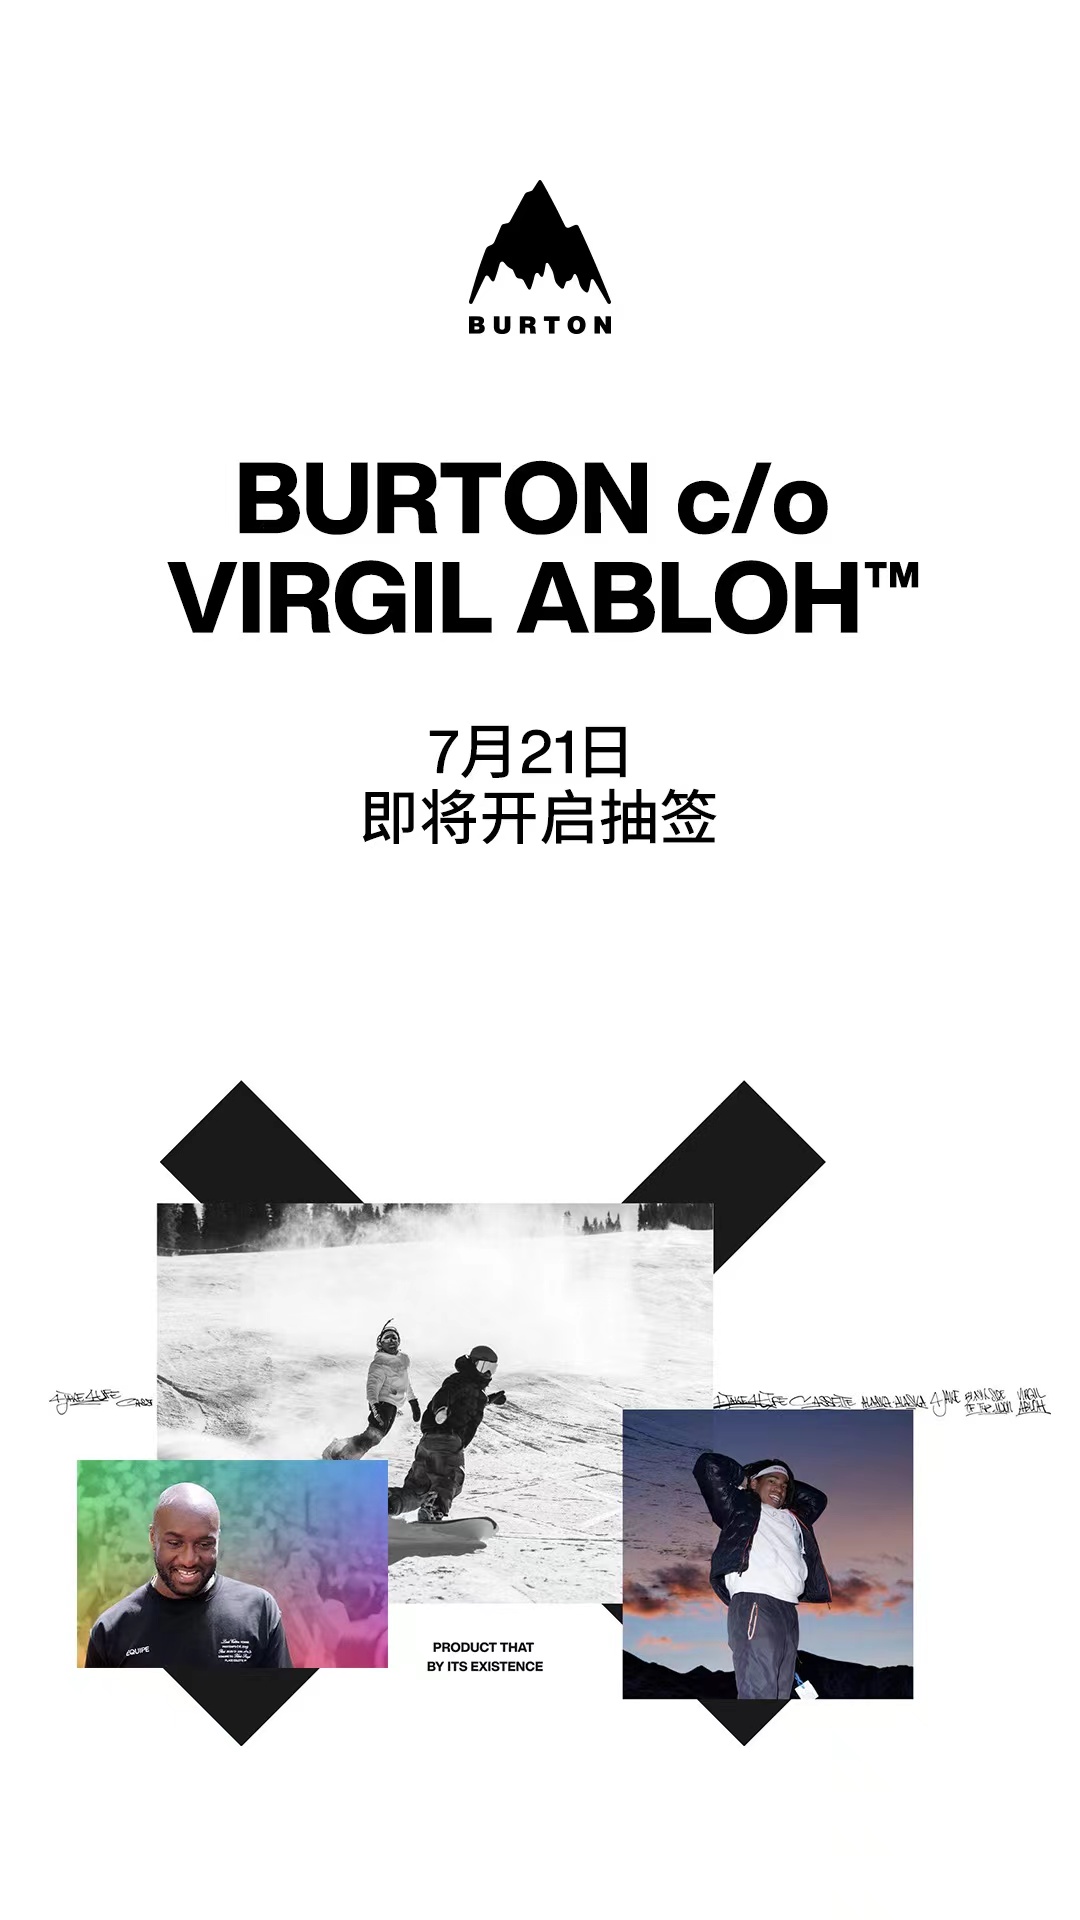 全新 BURTON c/o Virgil Abloh 单板联名系列即将开启抽签